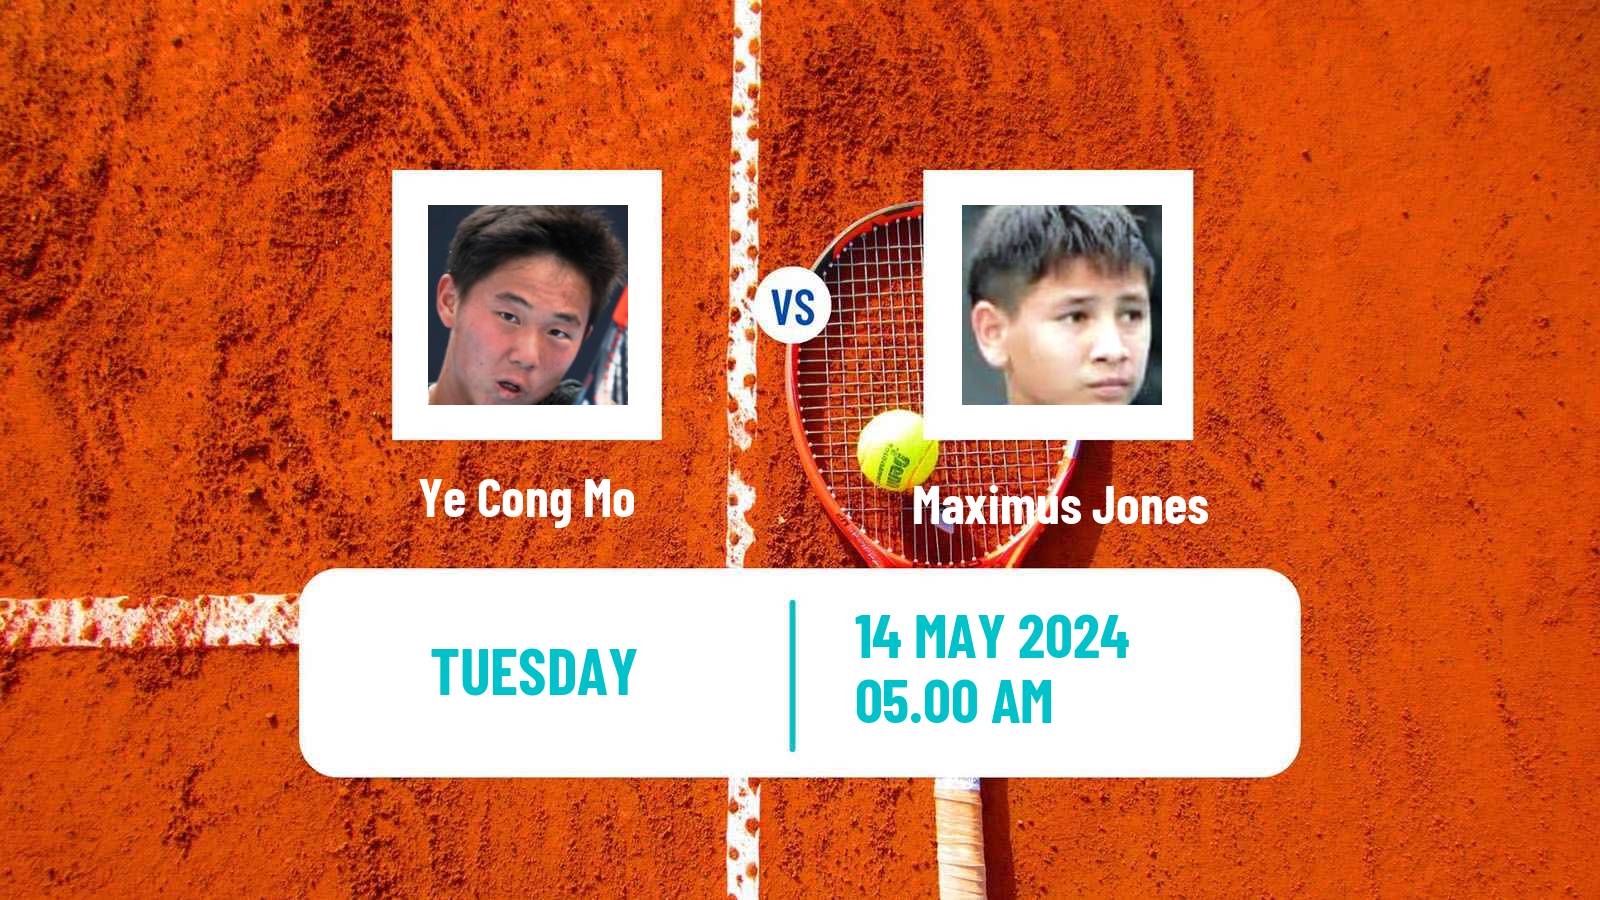 Tennis ITF M25 Luan Men Ye Cong Mo - Maximus Jones